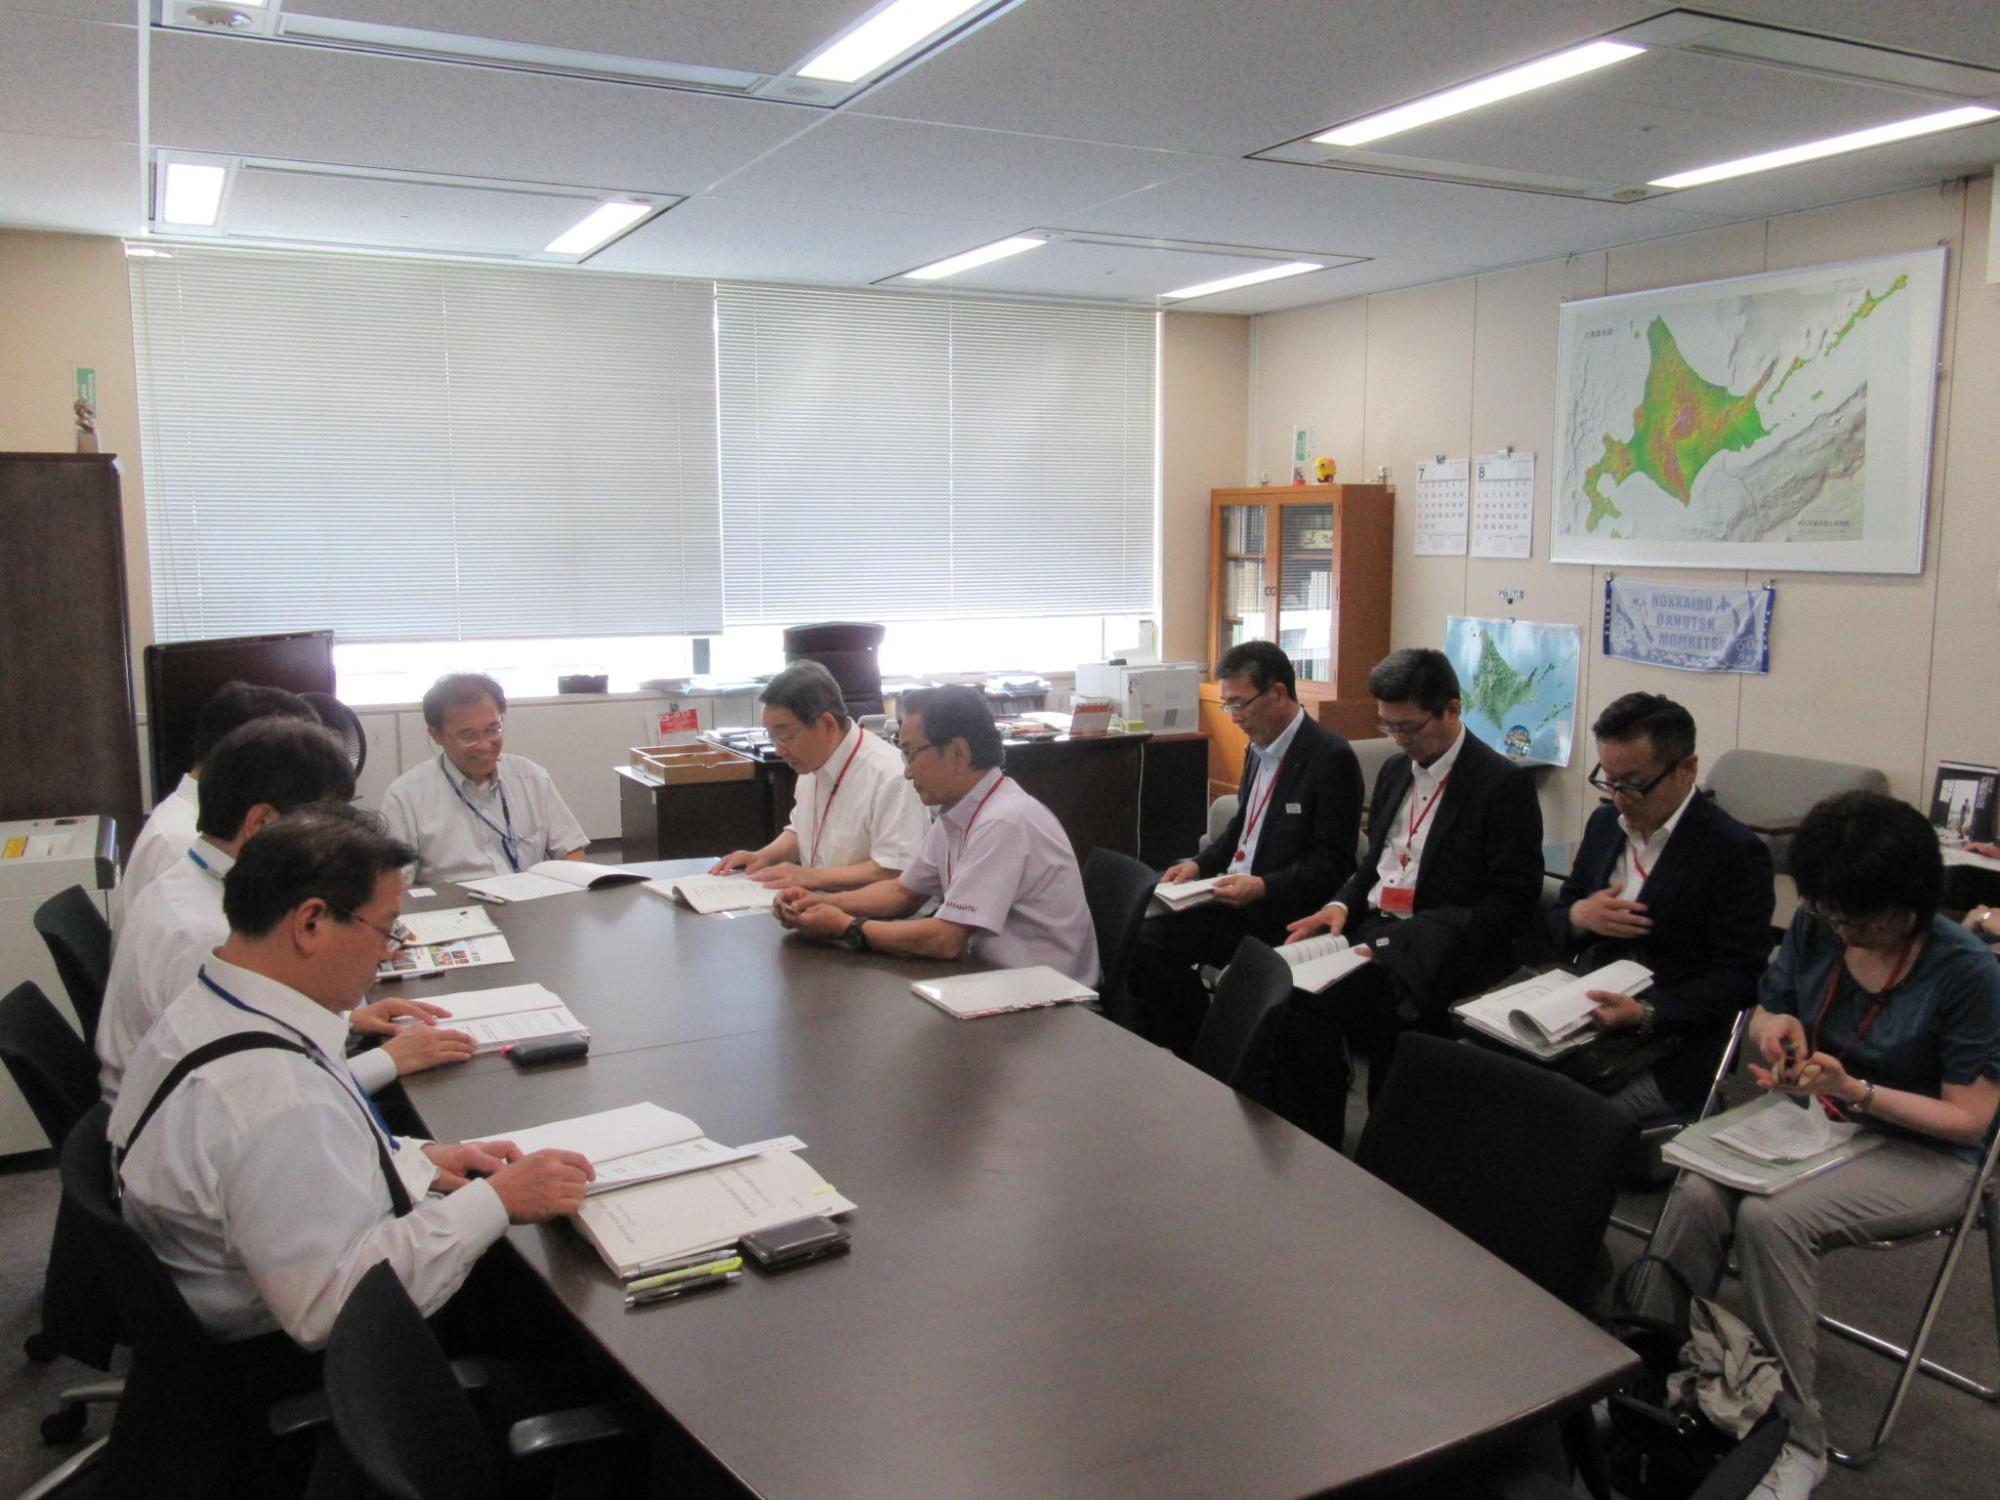 会議室にて要望内容を話し合う原田市長と関係者の写真